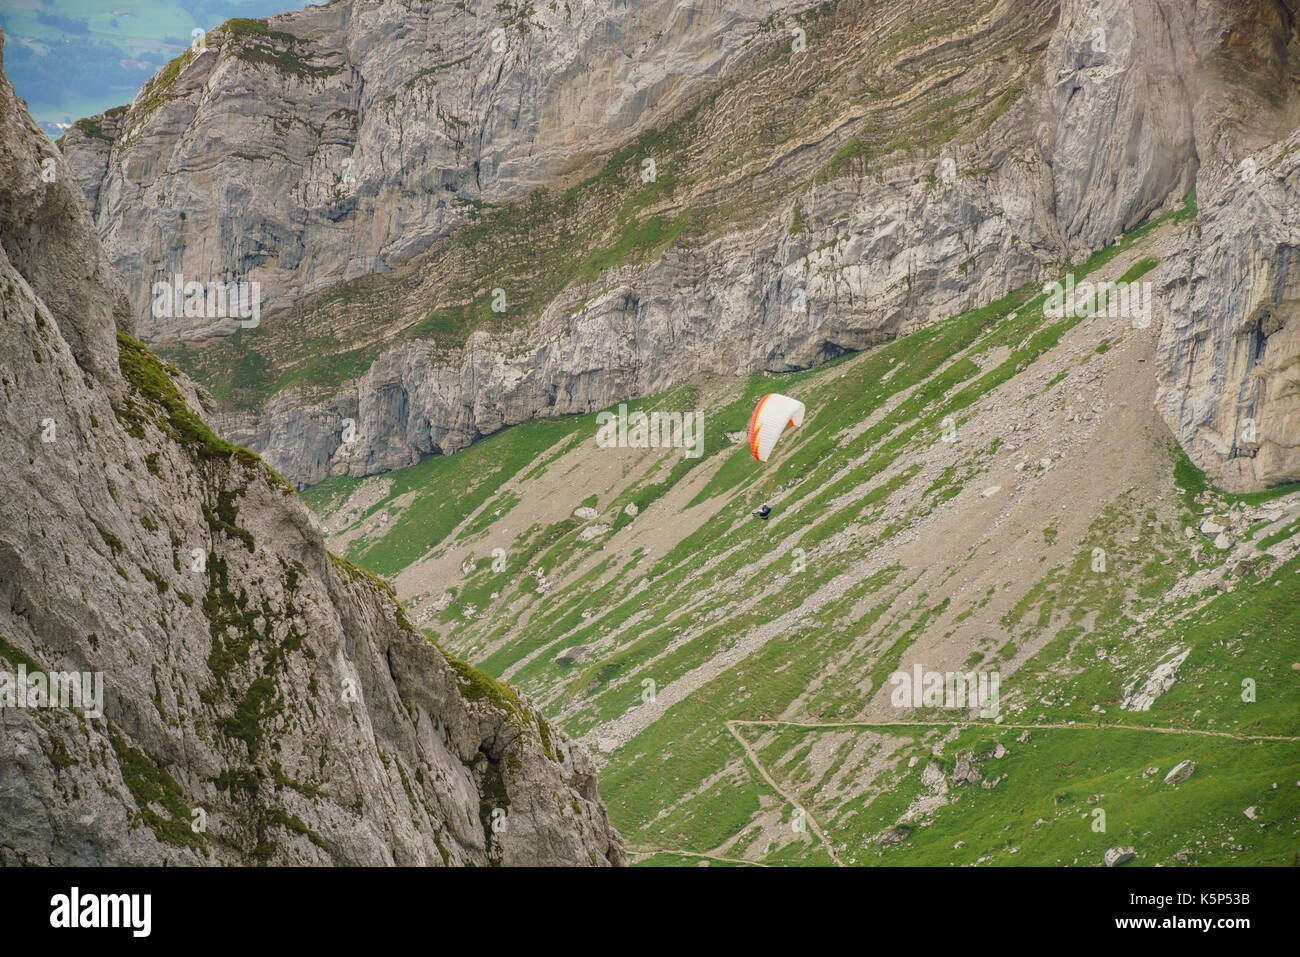 Mann, der Drachenfliegen über den Pilatus, Luzern, Schweiz Stockfoto